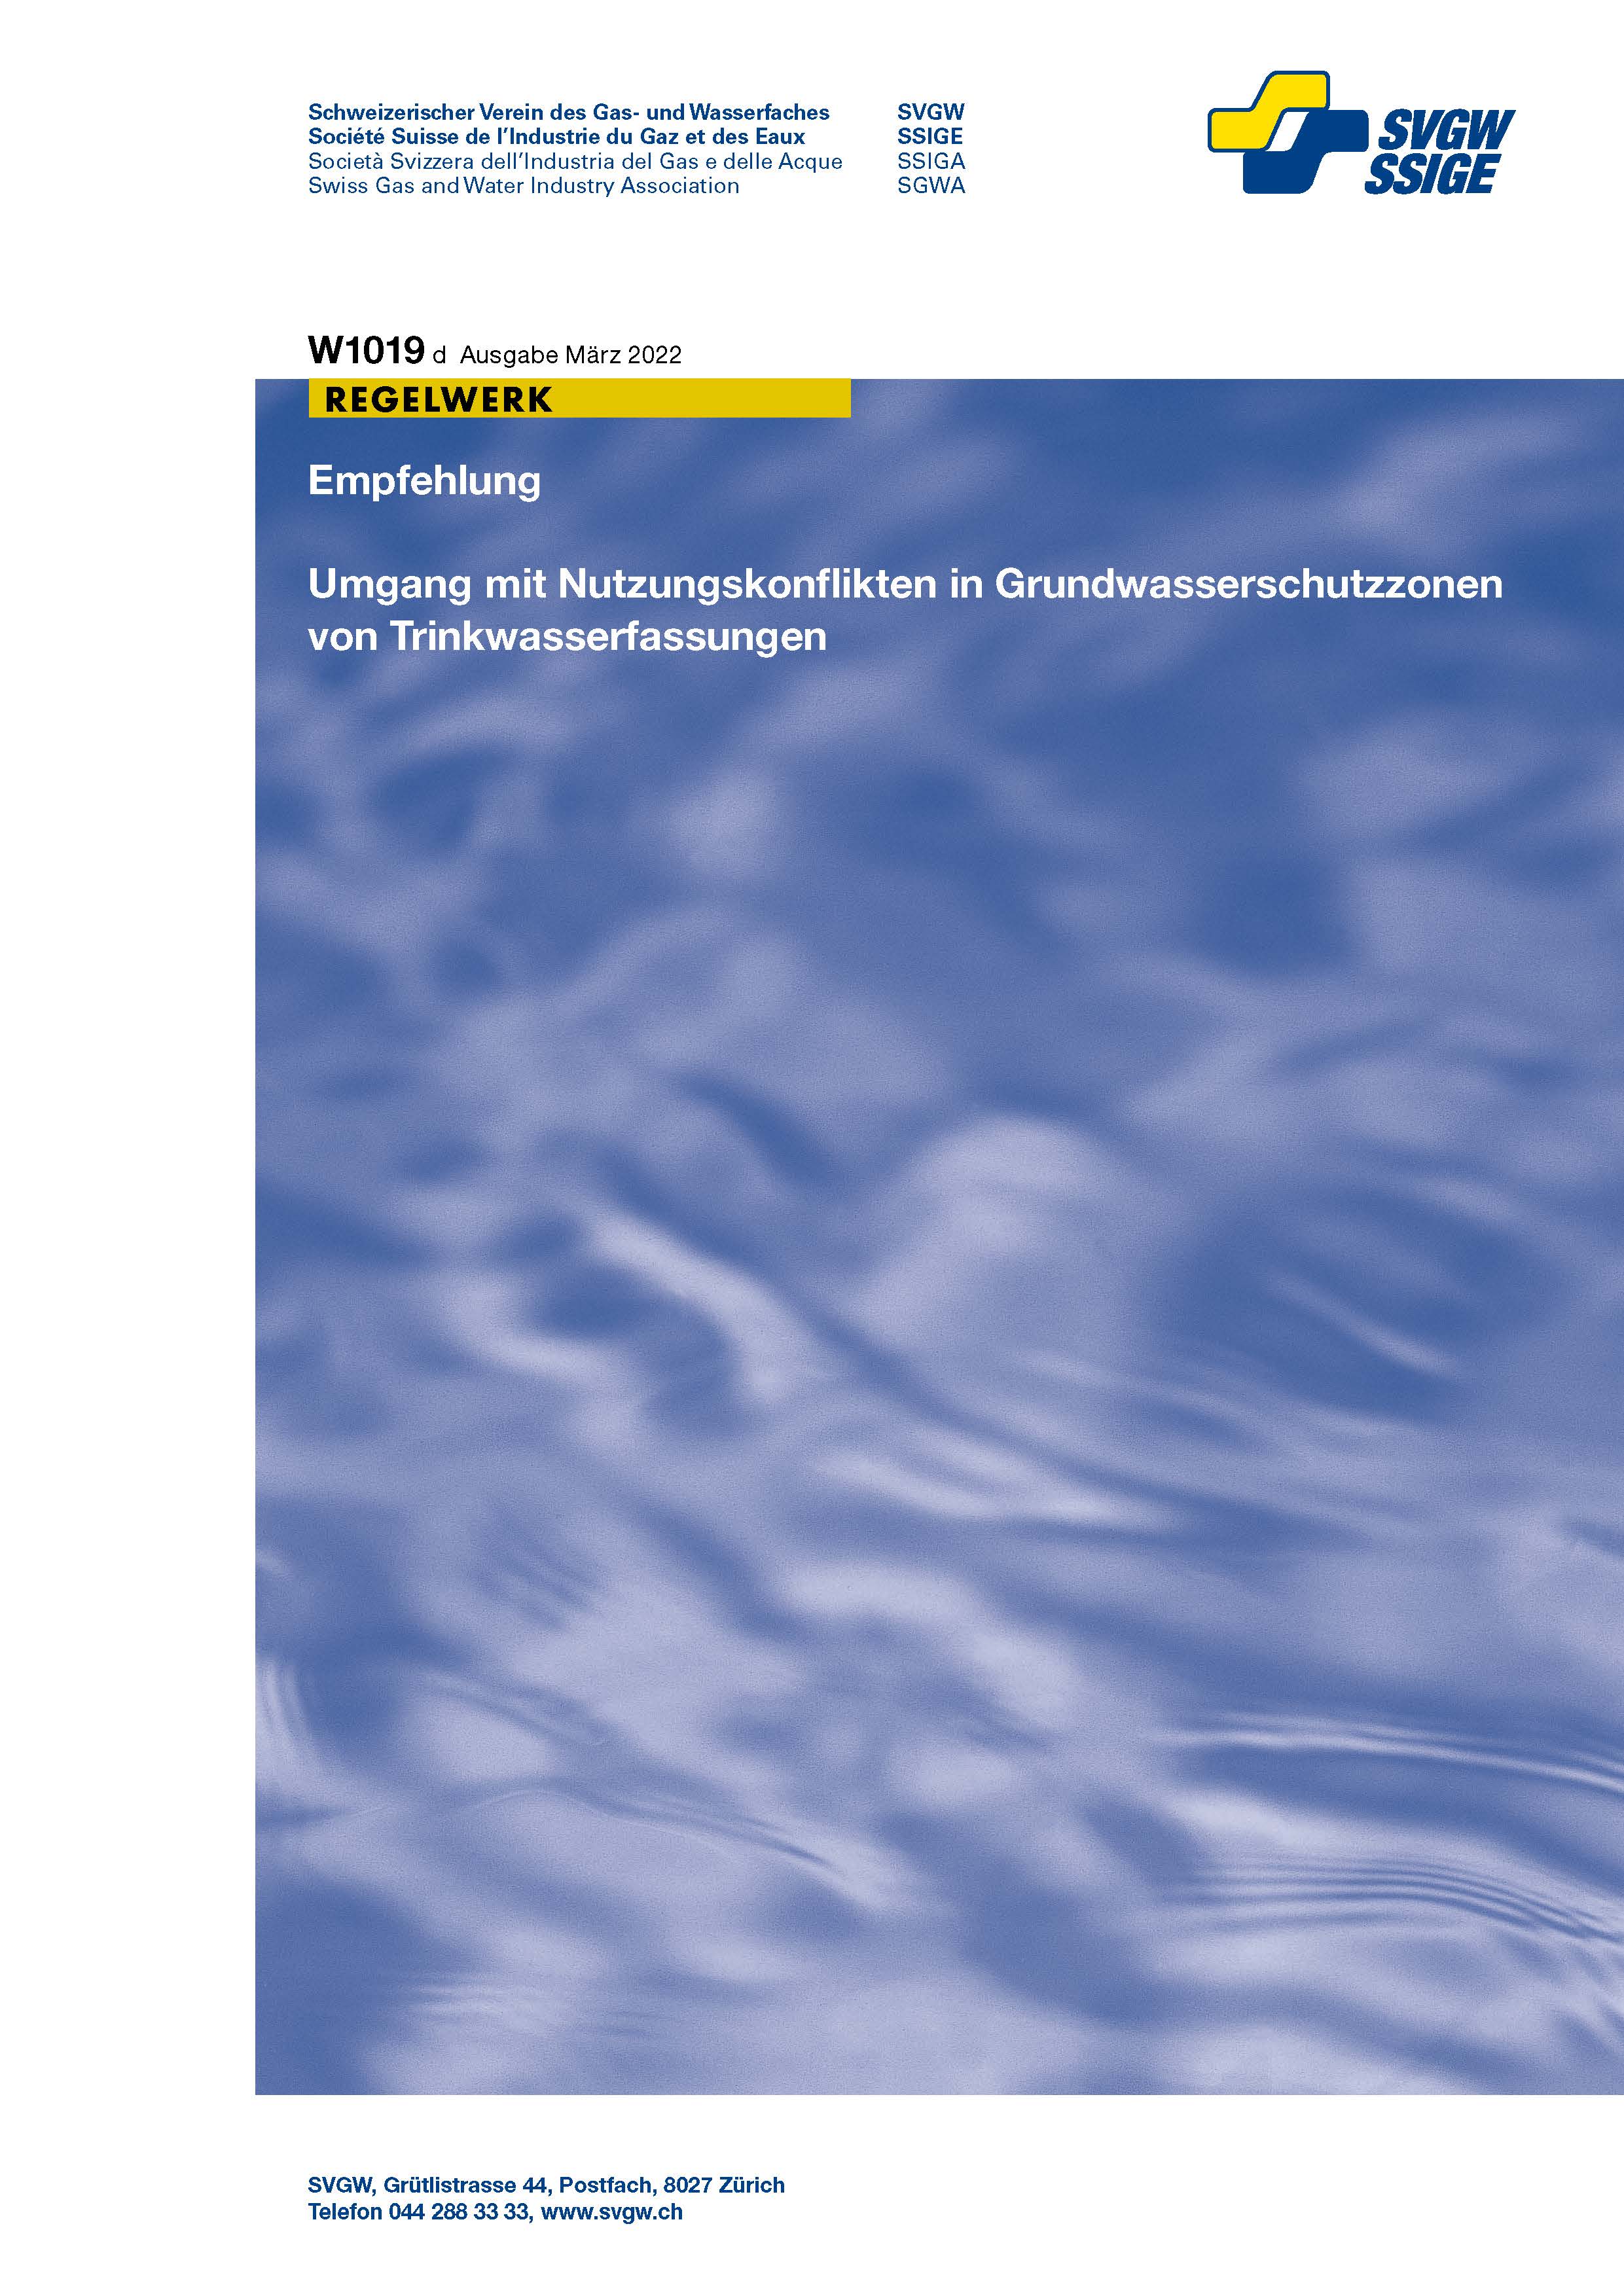 W1019 d Empfehlung; Umgang mit Nutzungskonflikten in Grundwasserschutzzonen von Trinkwasserfassungen